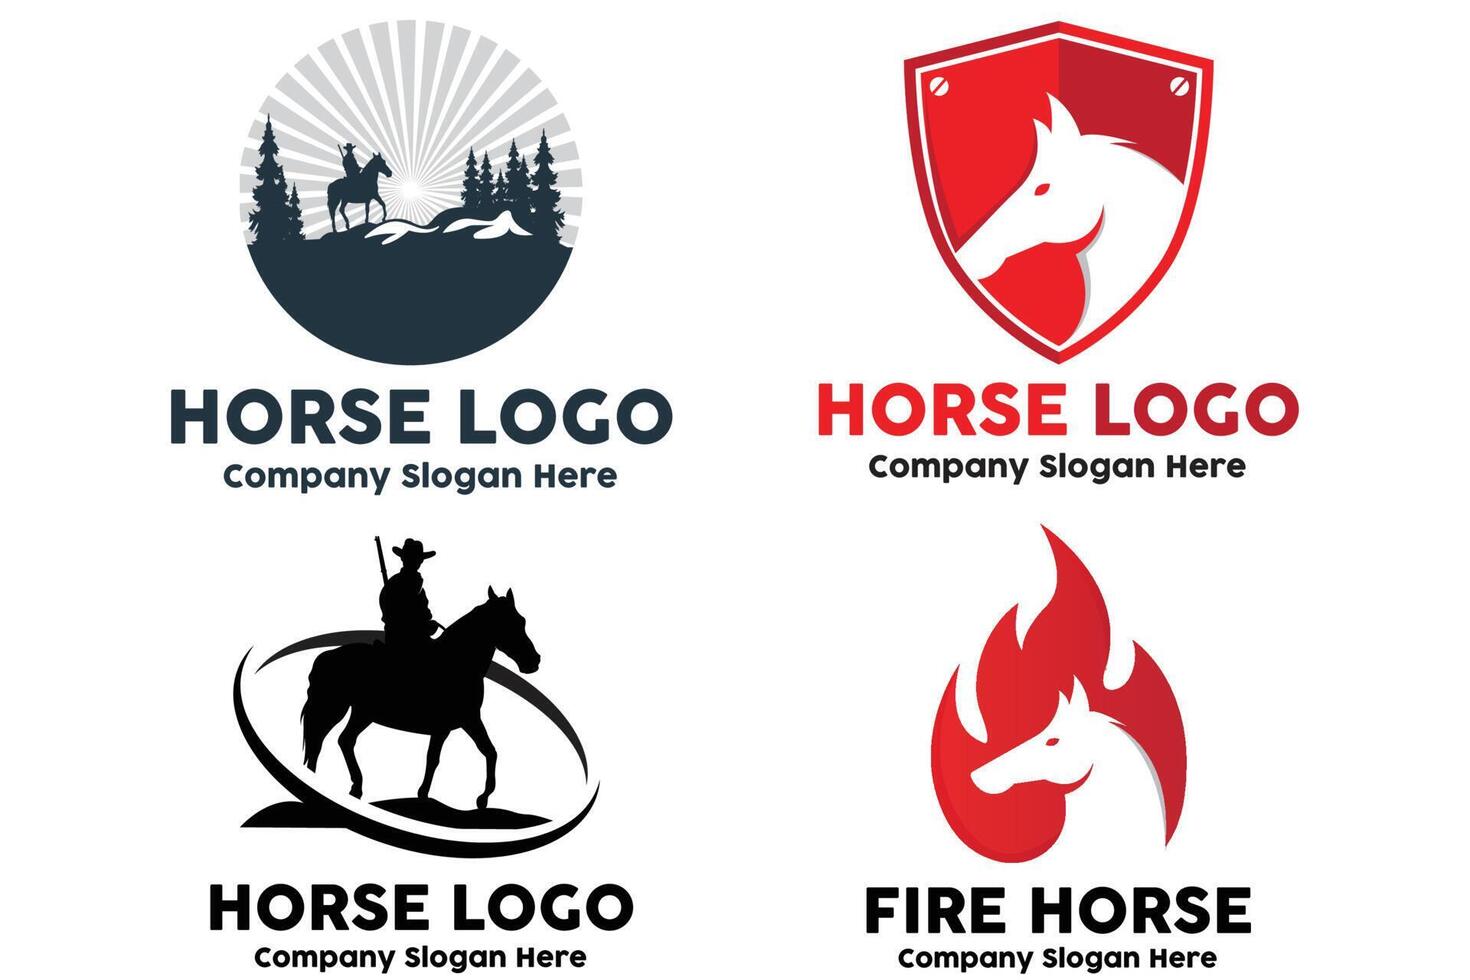 vettore del logo del cavallo, evento sportivo mondiale, corse di velocità, illustrazione del design degli animali